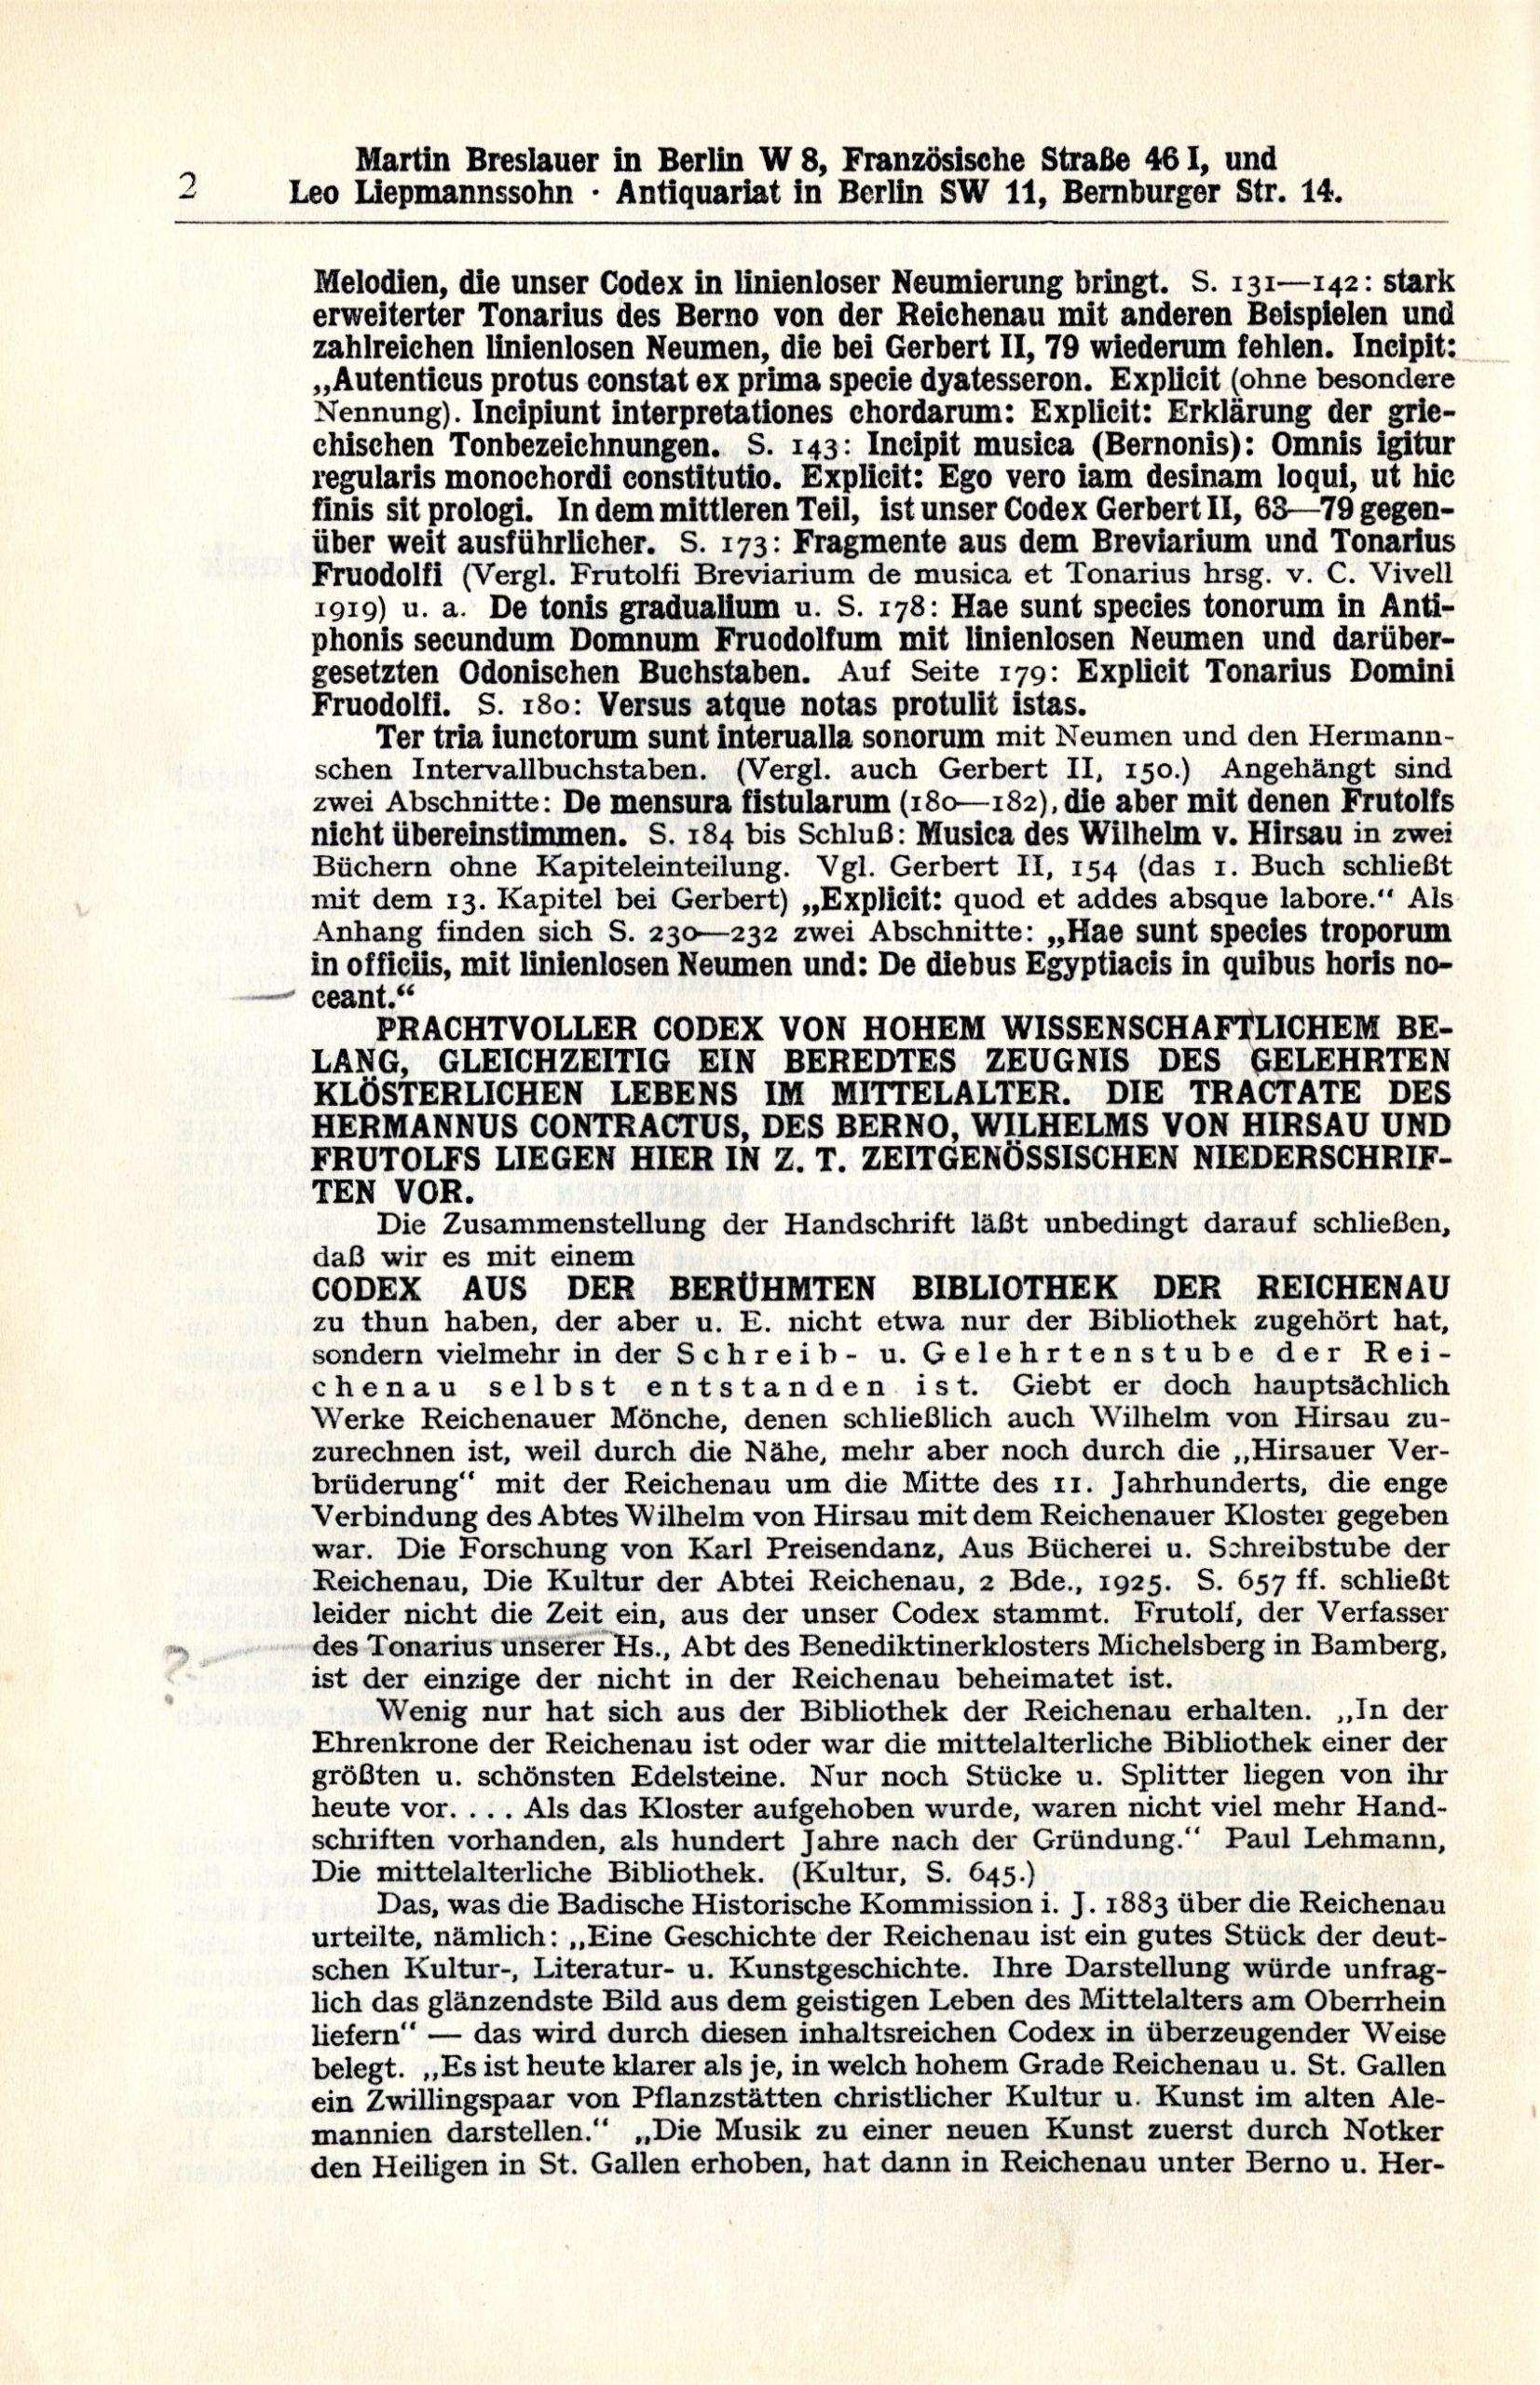 Wolffheim auction catalog vol 2, page 2